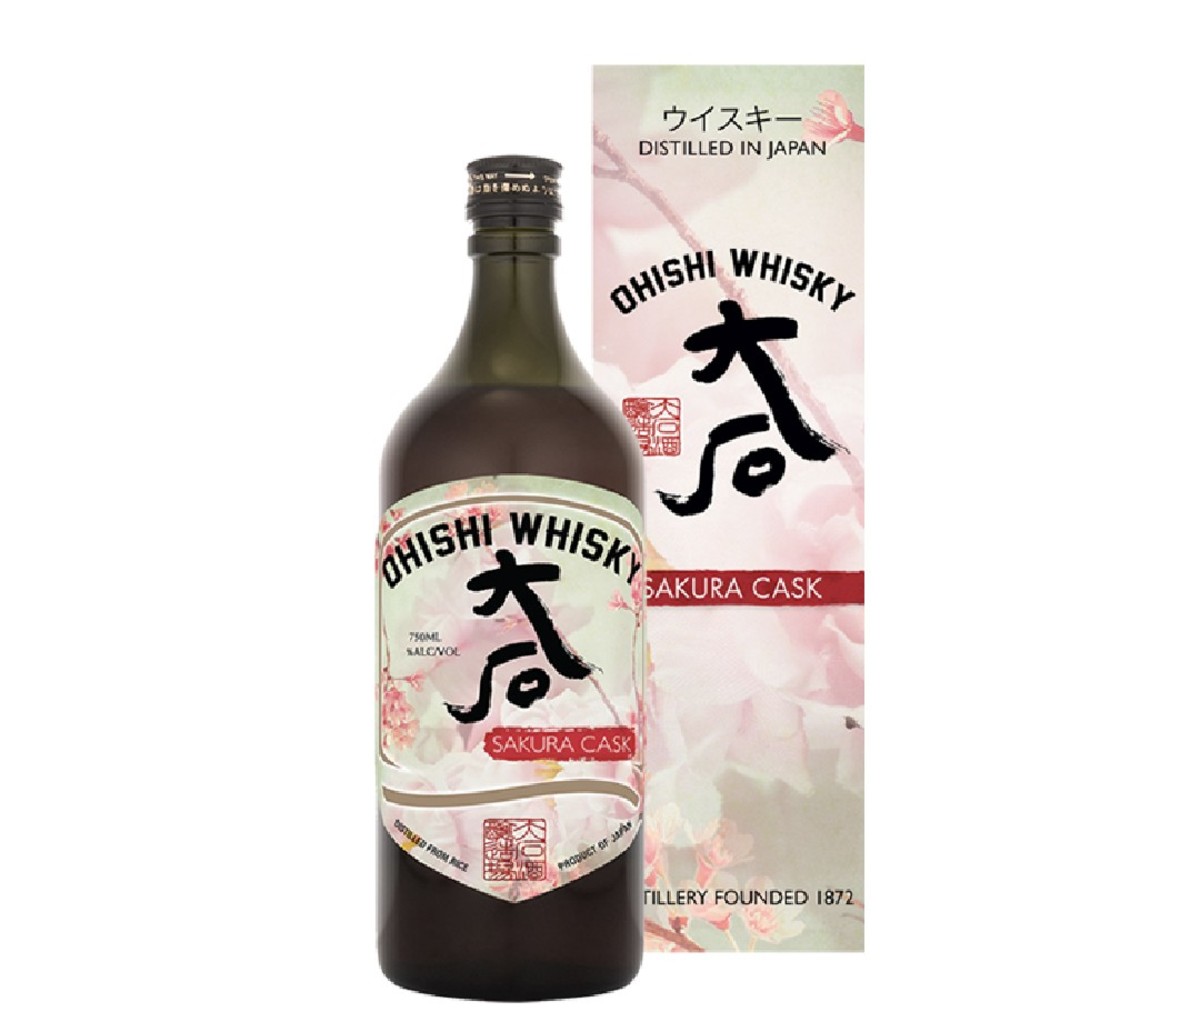 Bottle of Ohishi Sakura Cask Japanese whisky